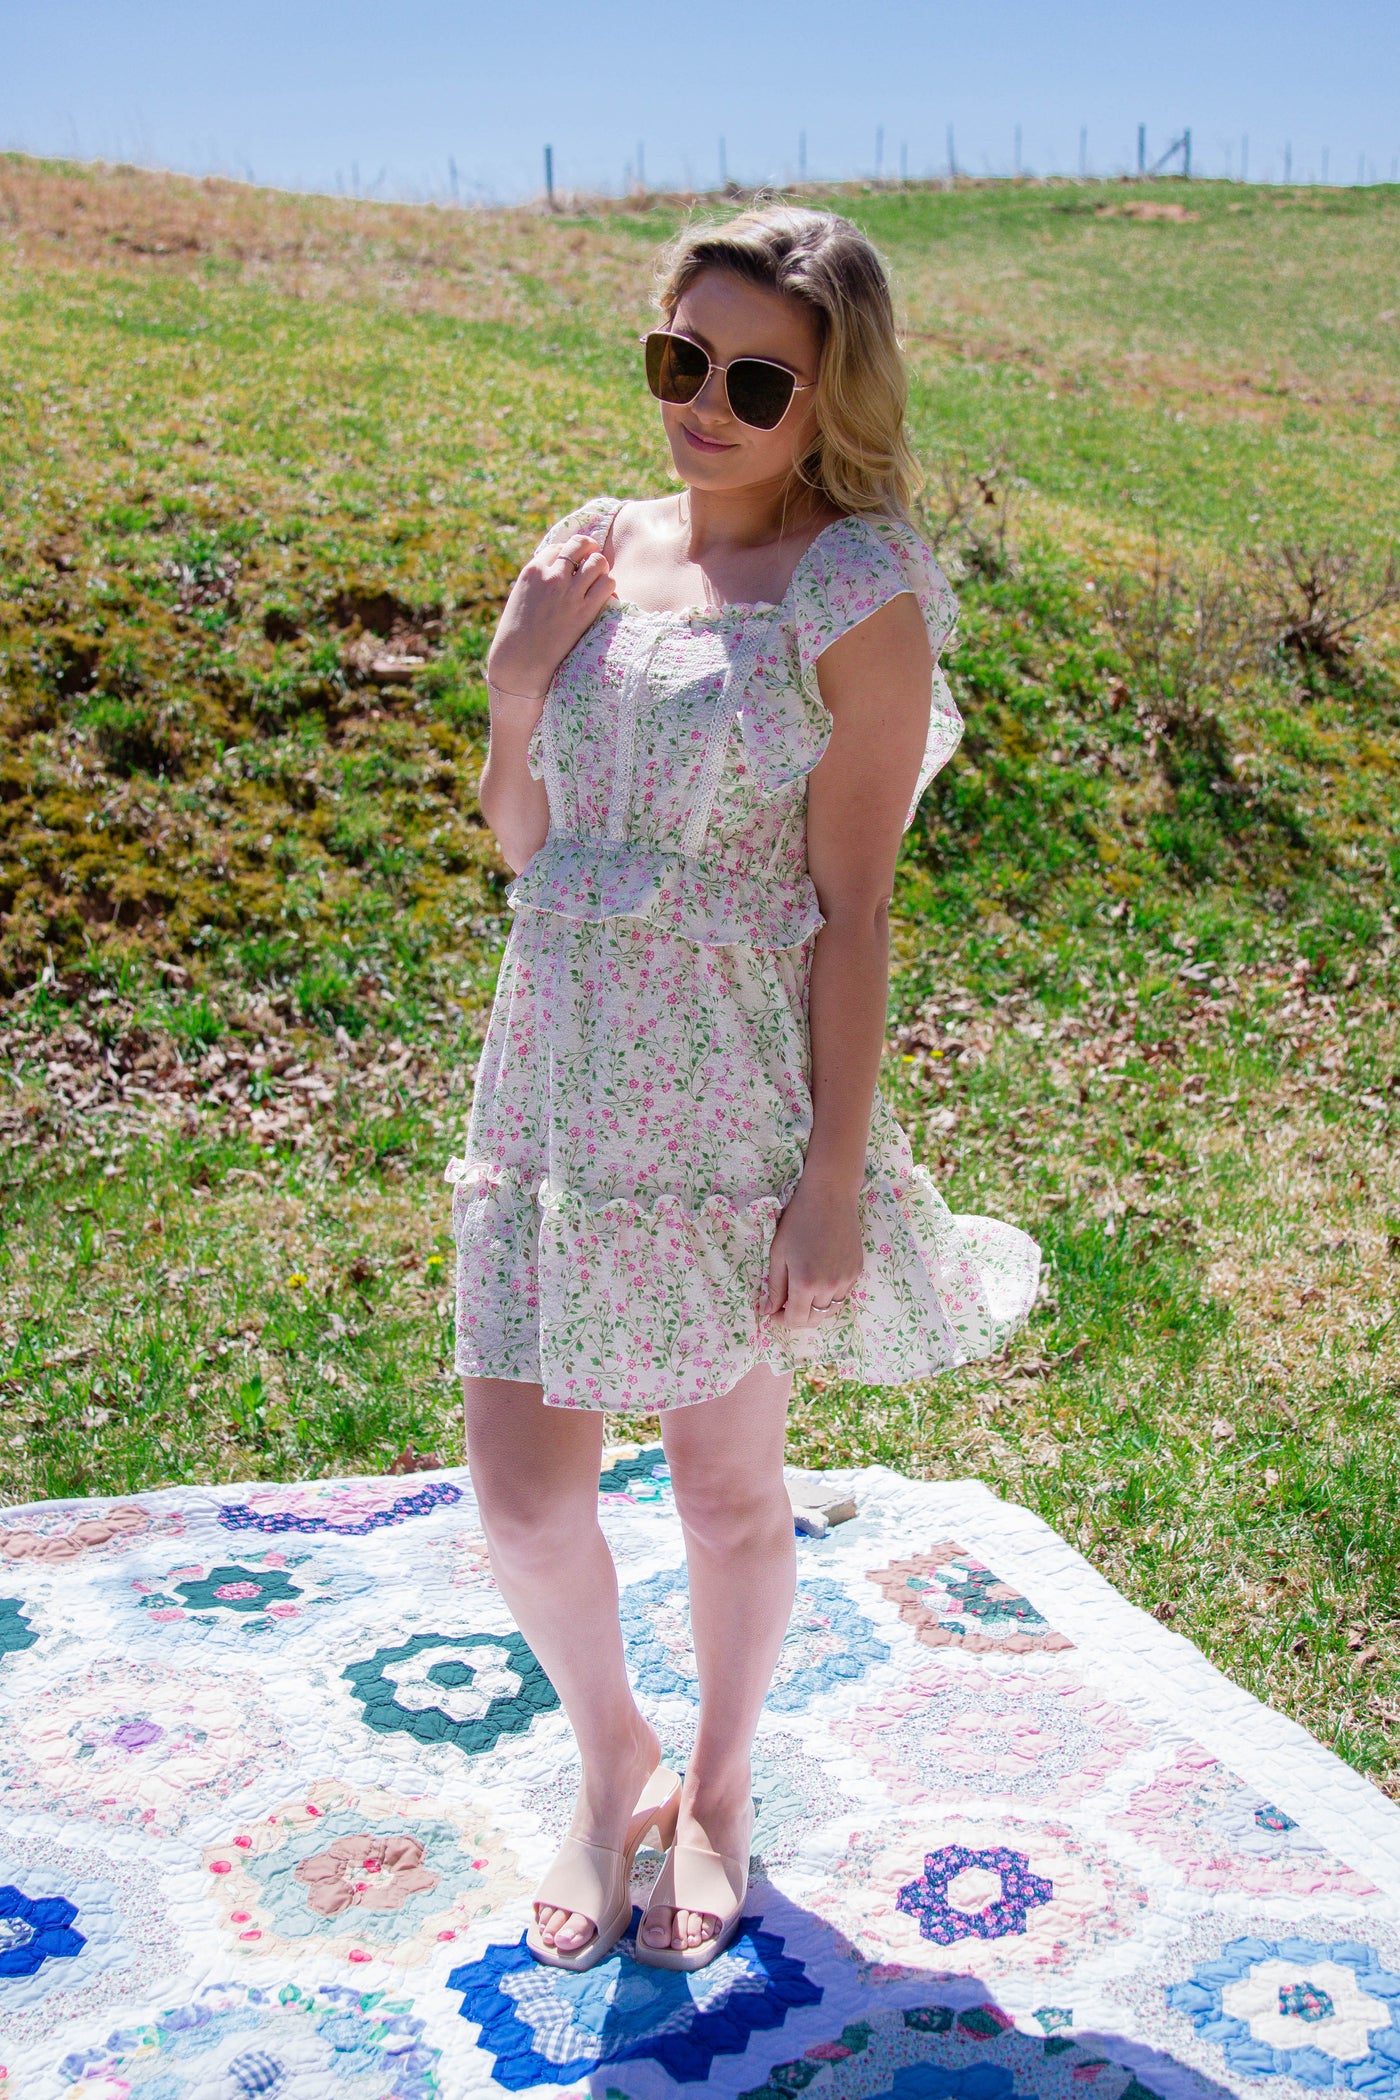 Sweet Floral Print Dress- Feminine Dresses- Tiered Ruffle Floral Print Mini Dress